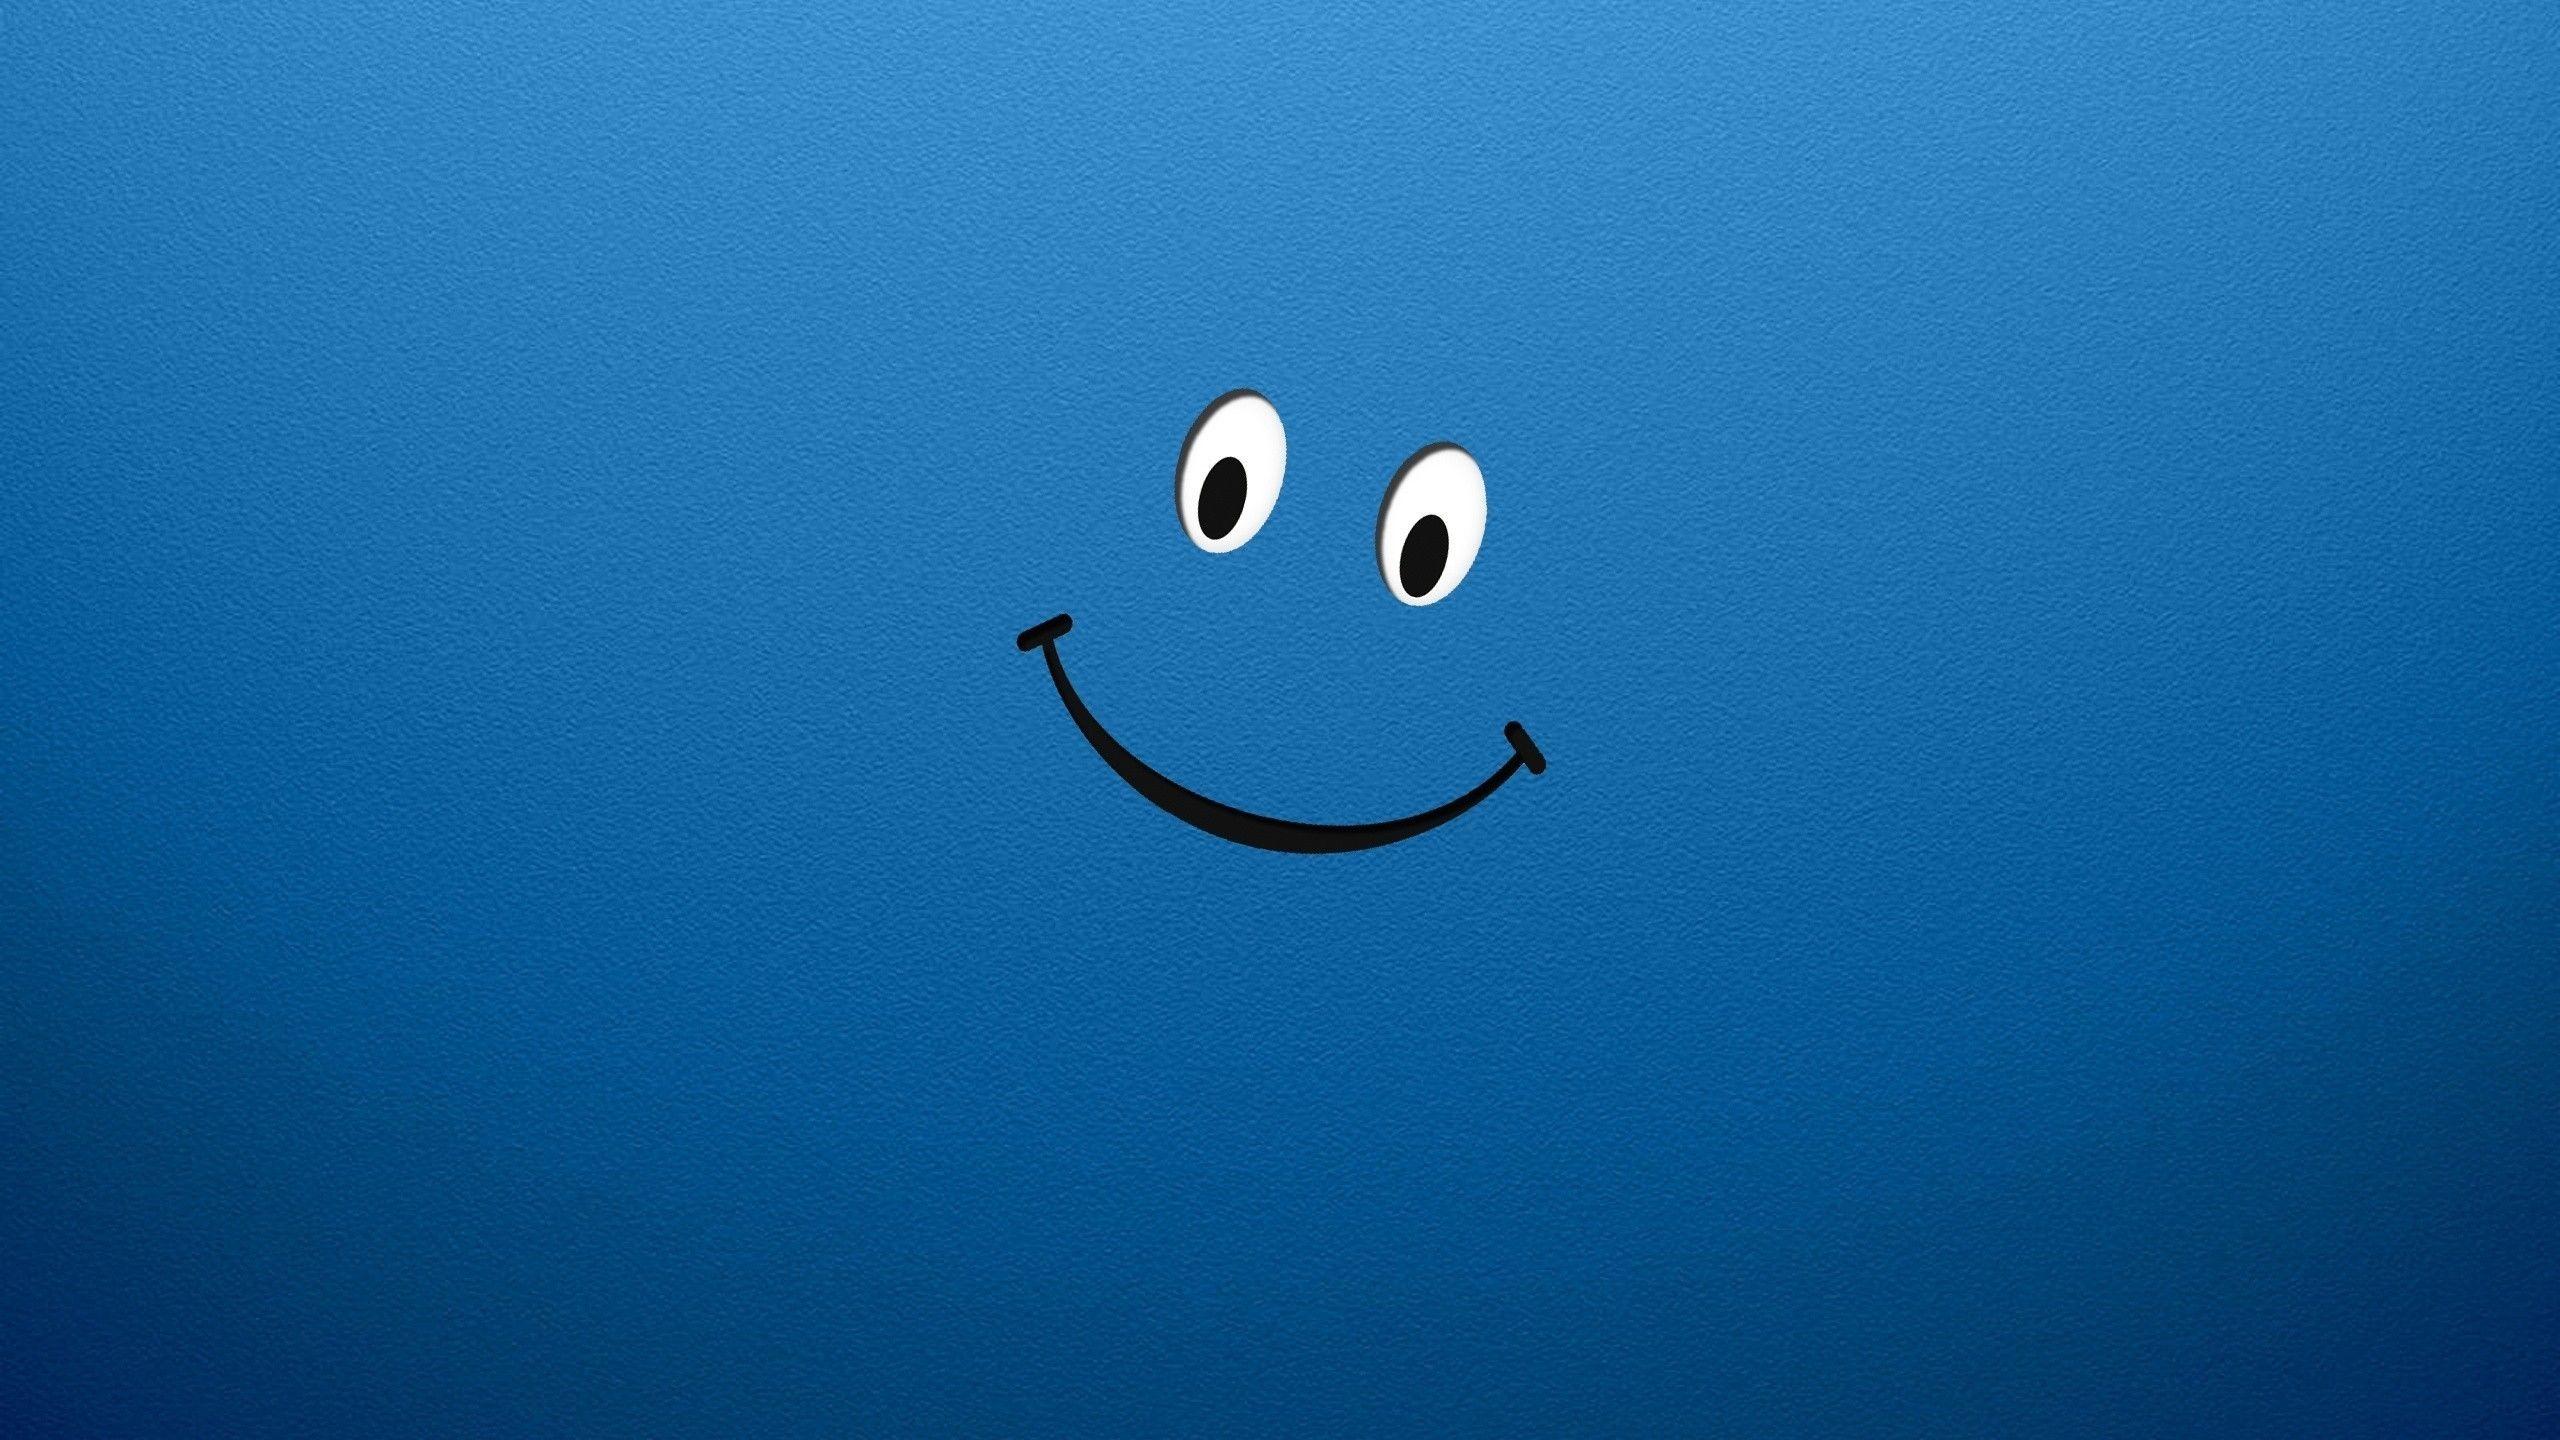 Wallpaper.wiki Be Happy Desktop Wallpaper PIC WPB0015537. Wallpaper